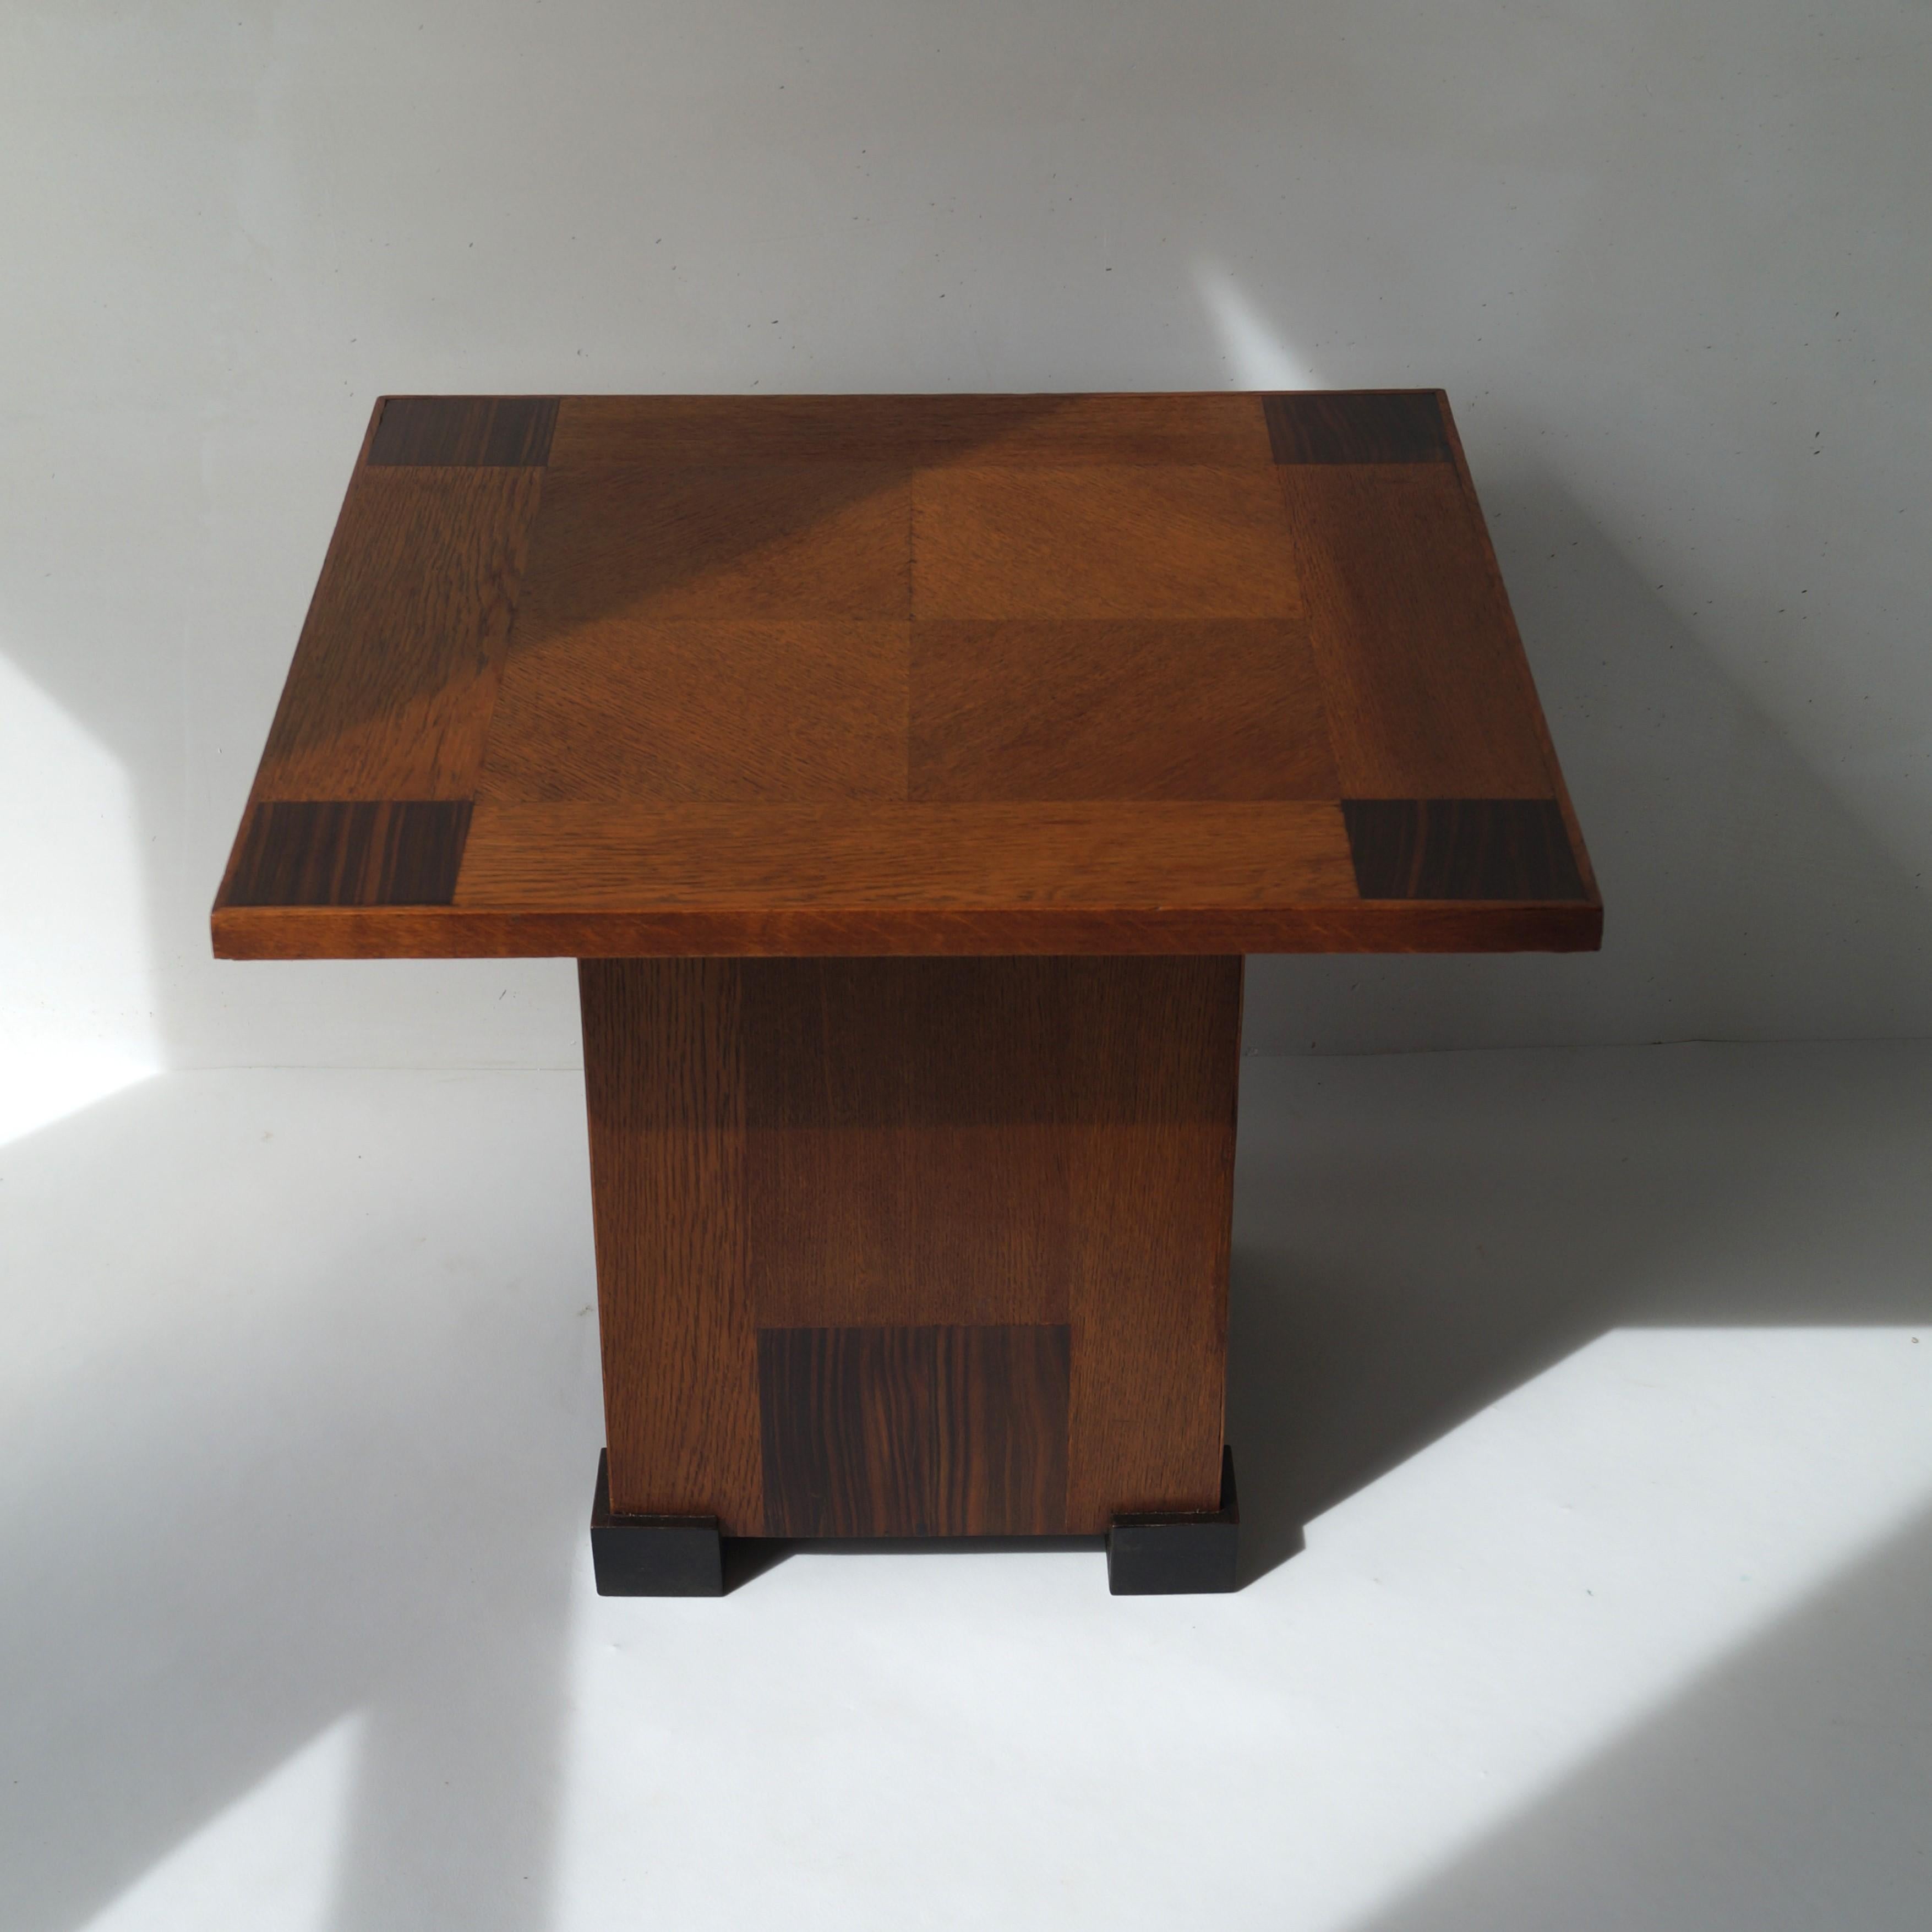 Rare table basse moderniste des années 1920 avec un extraordinaire motif de table en damier, qui se répète sur les 4 côtés de la base. Fabriqué en chêne et en coromandel (placage). Le style rappelle les designs de P.E.L. Izeren pour De Genneper